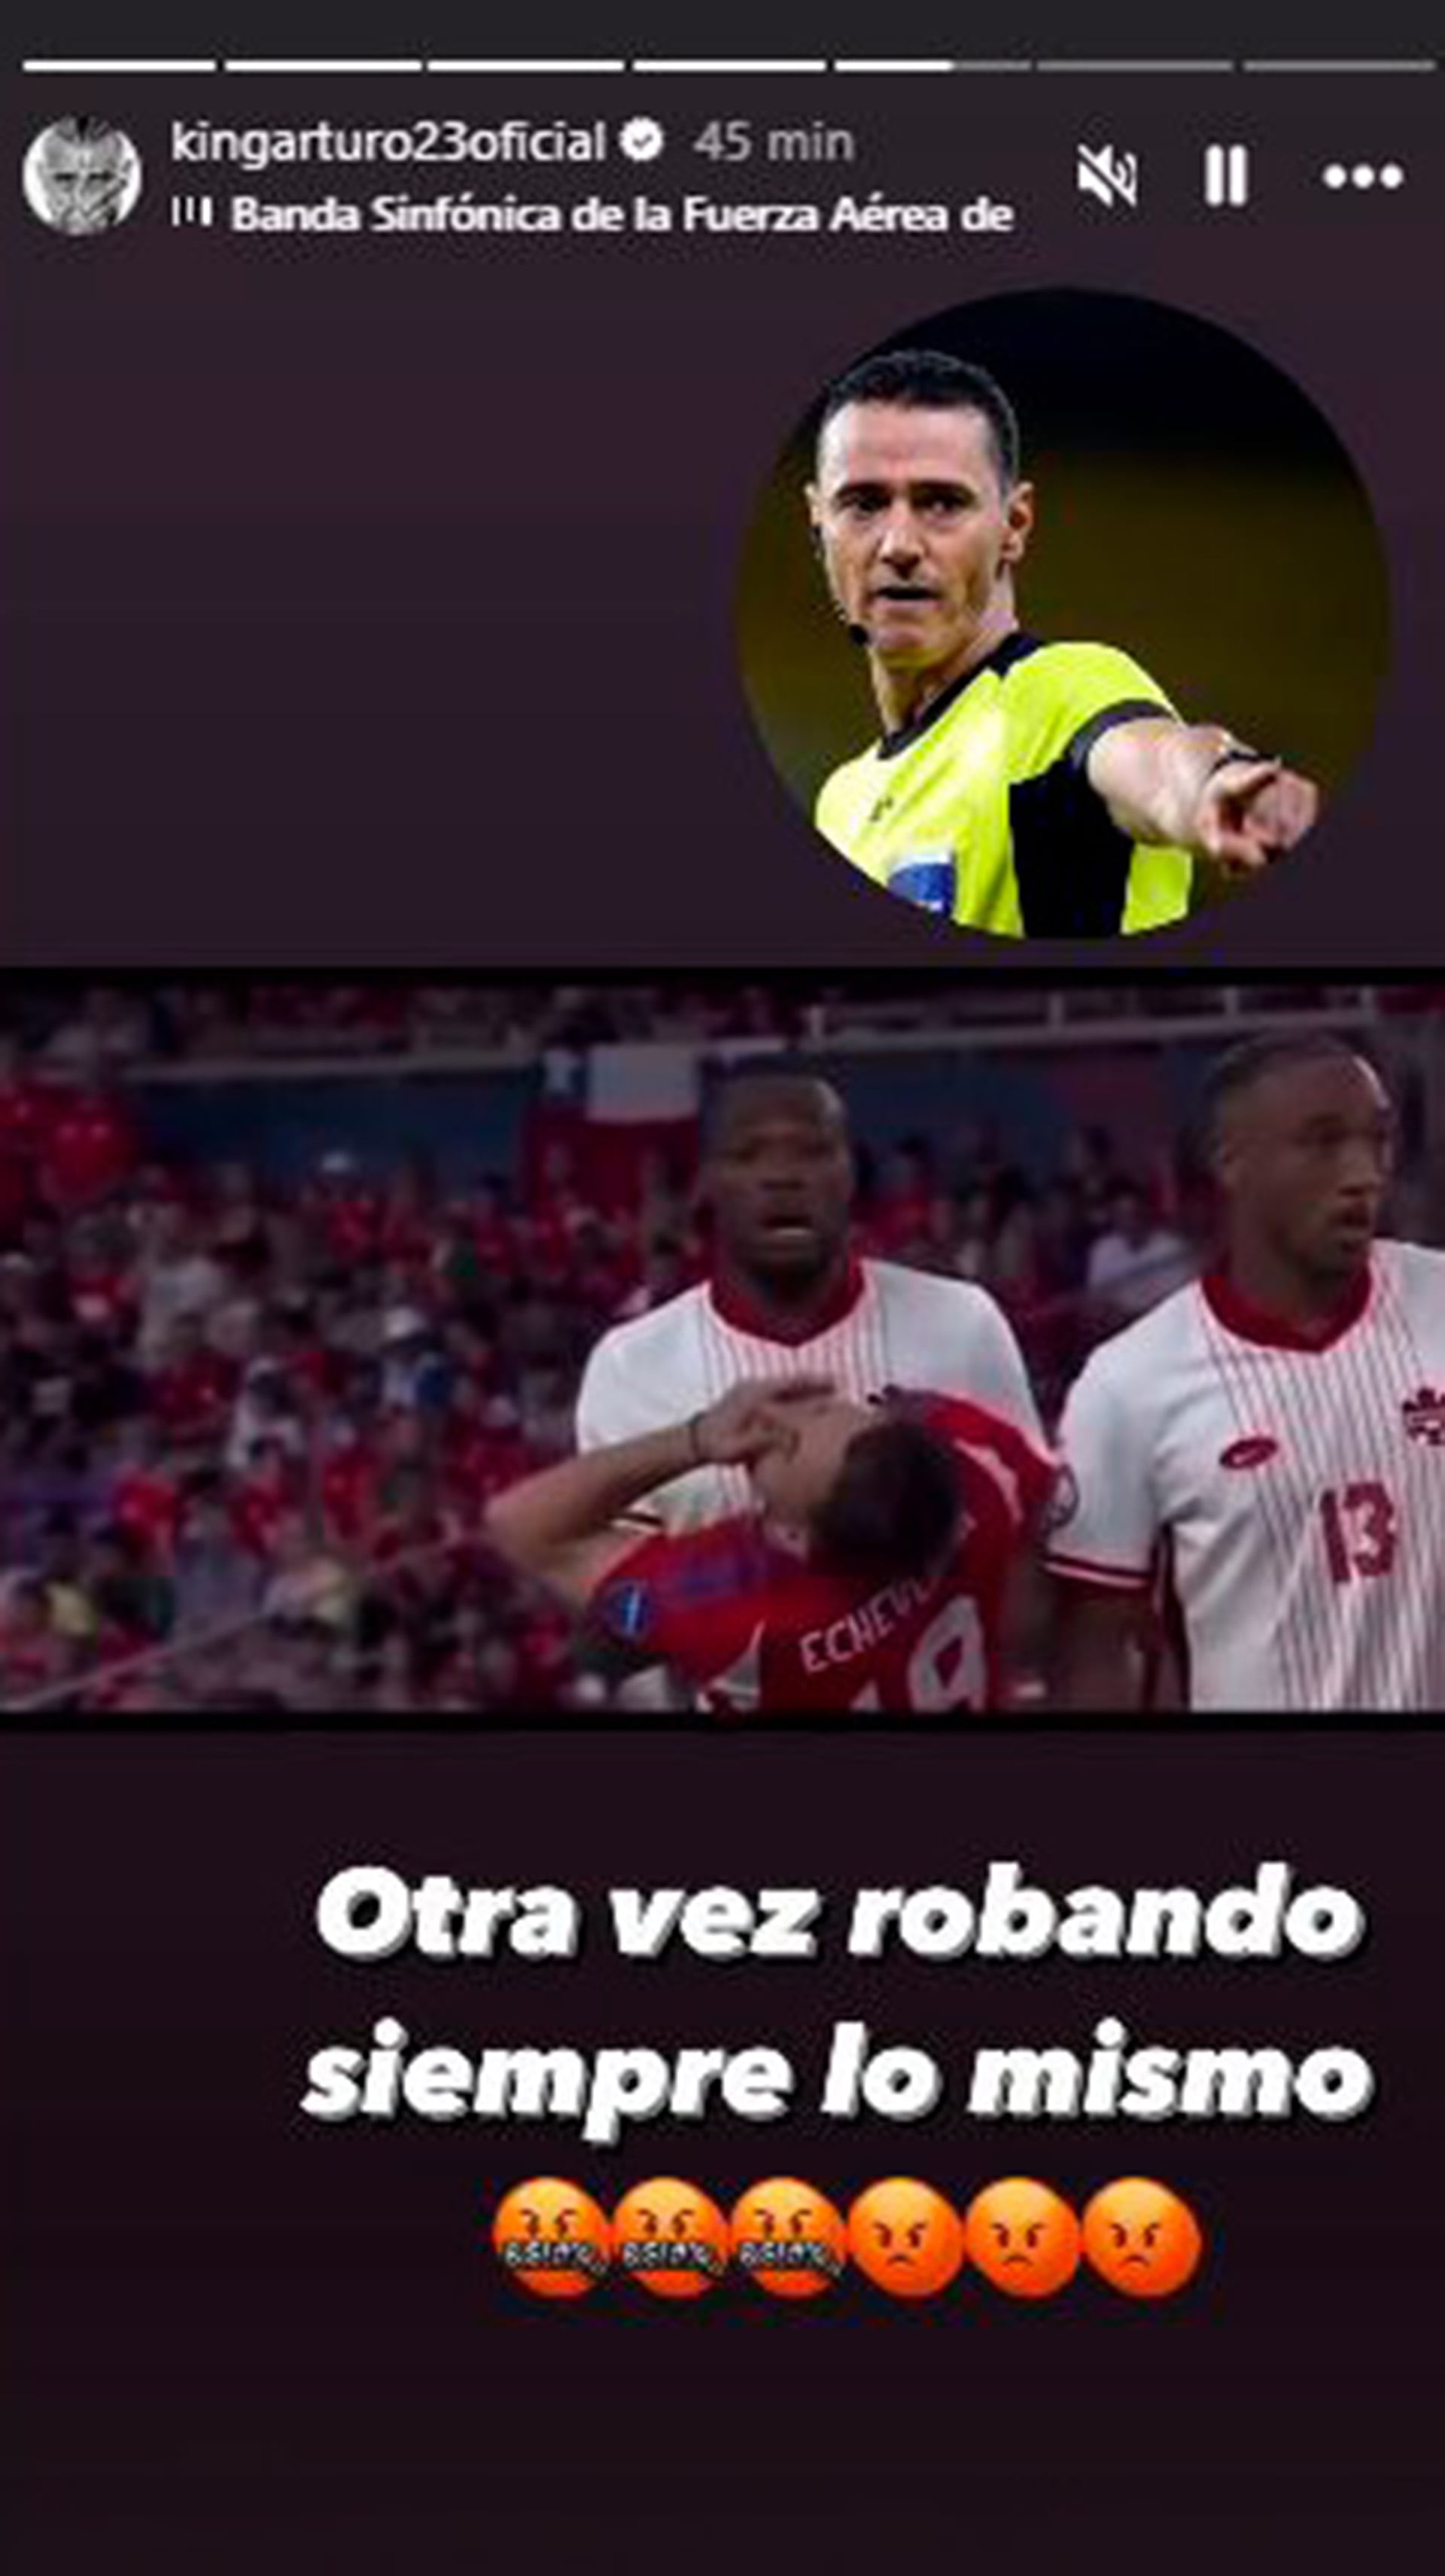 La furia de Gary Medel y Arturo Vidal tras la eliminación de Chile